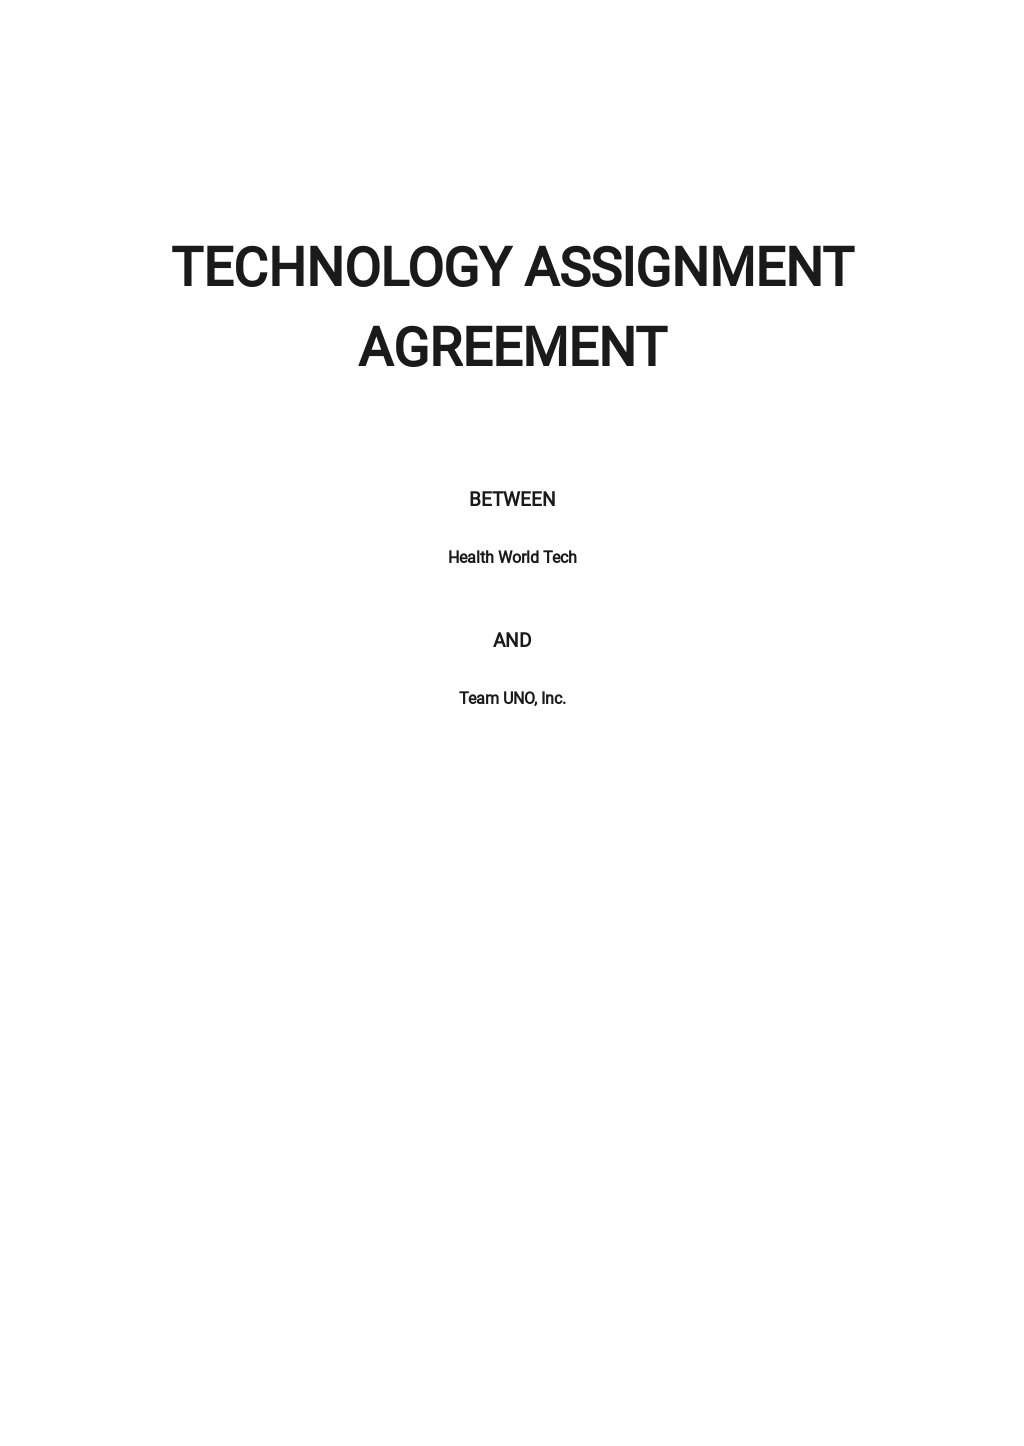 website assignment agreement